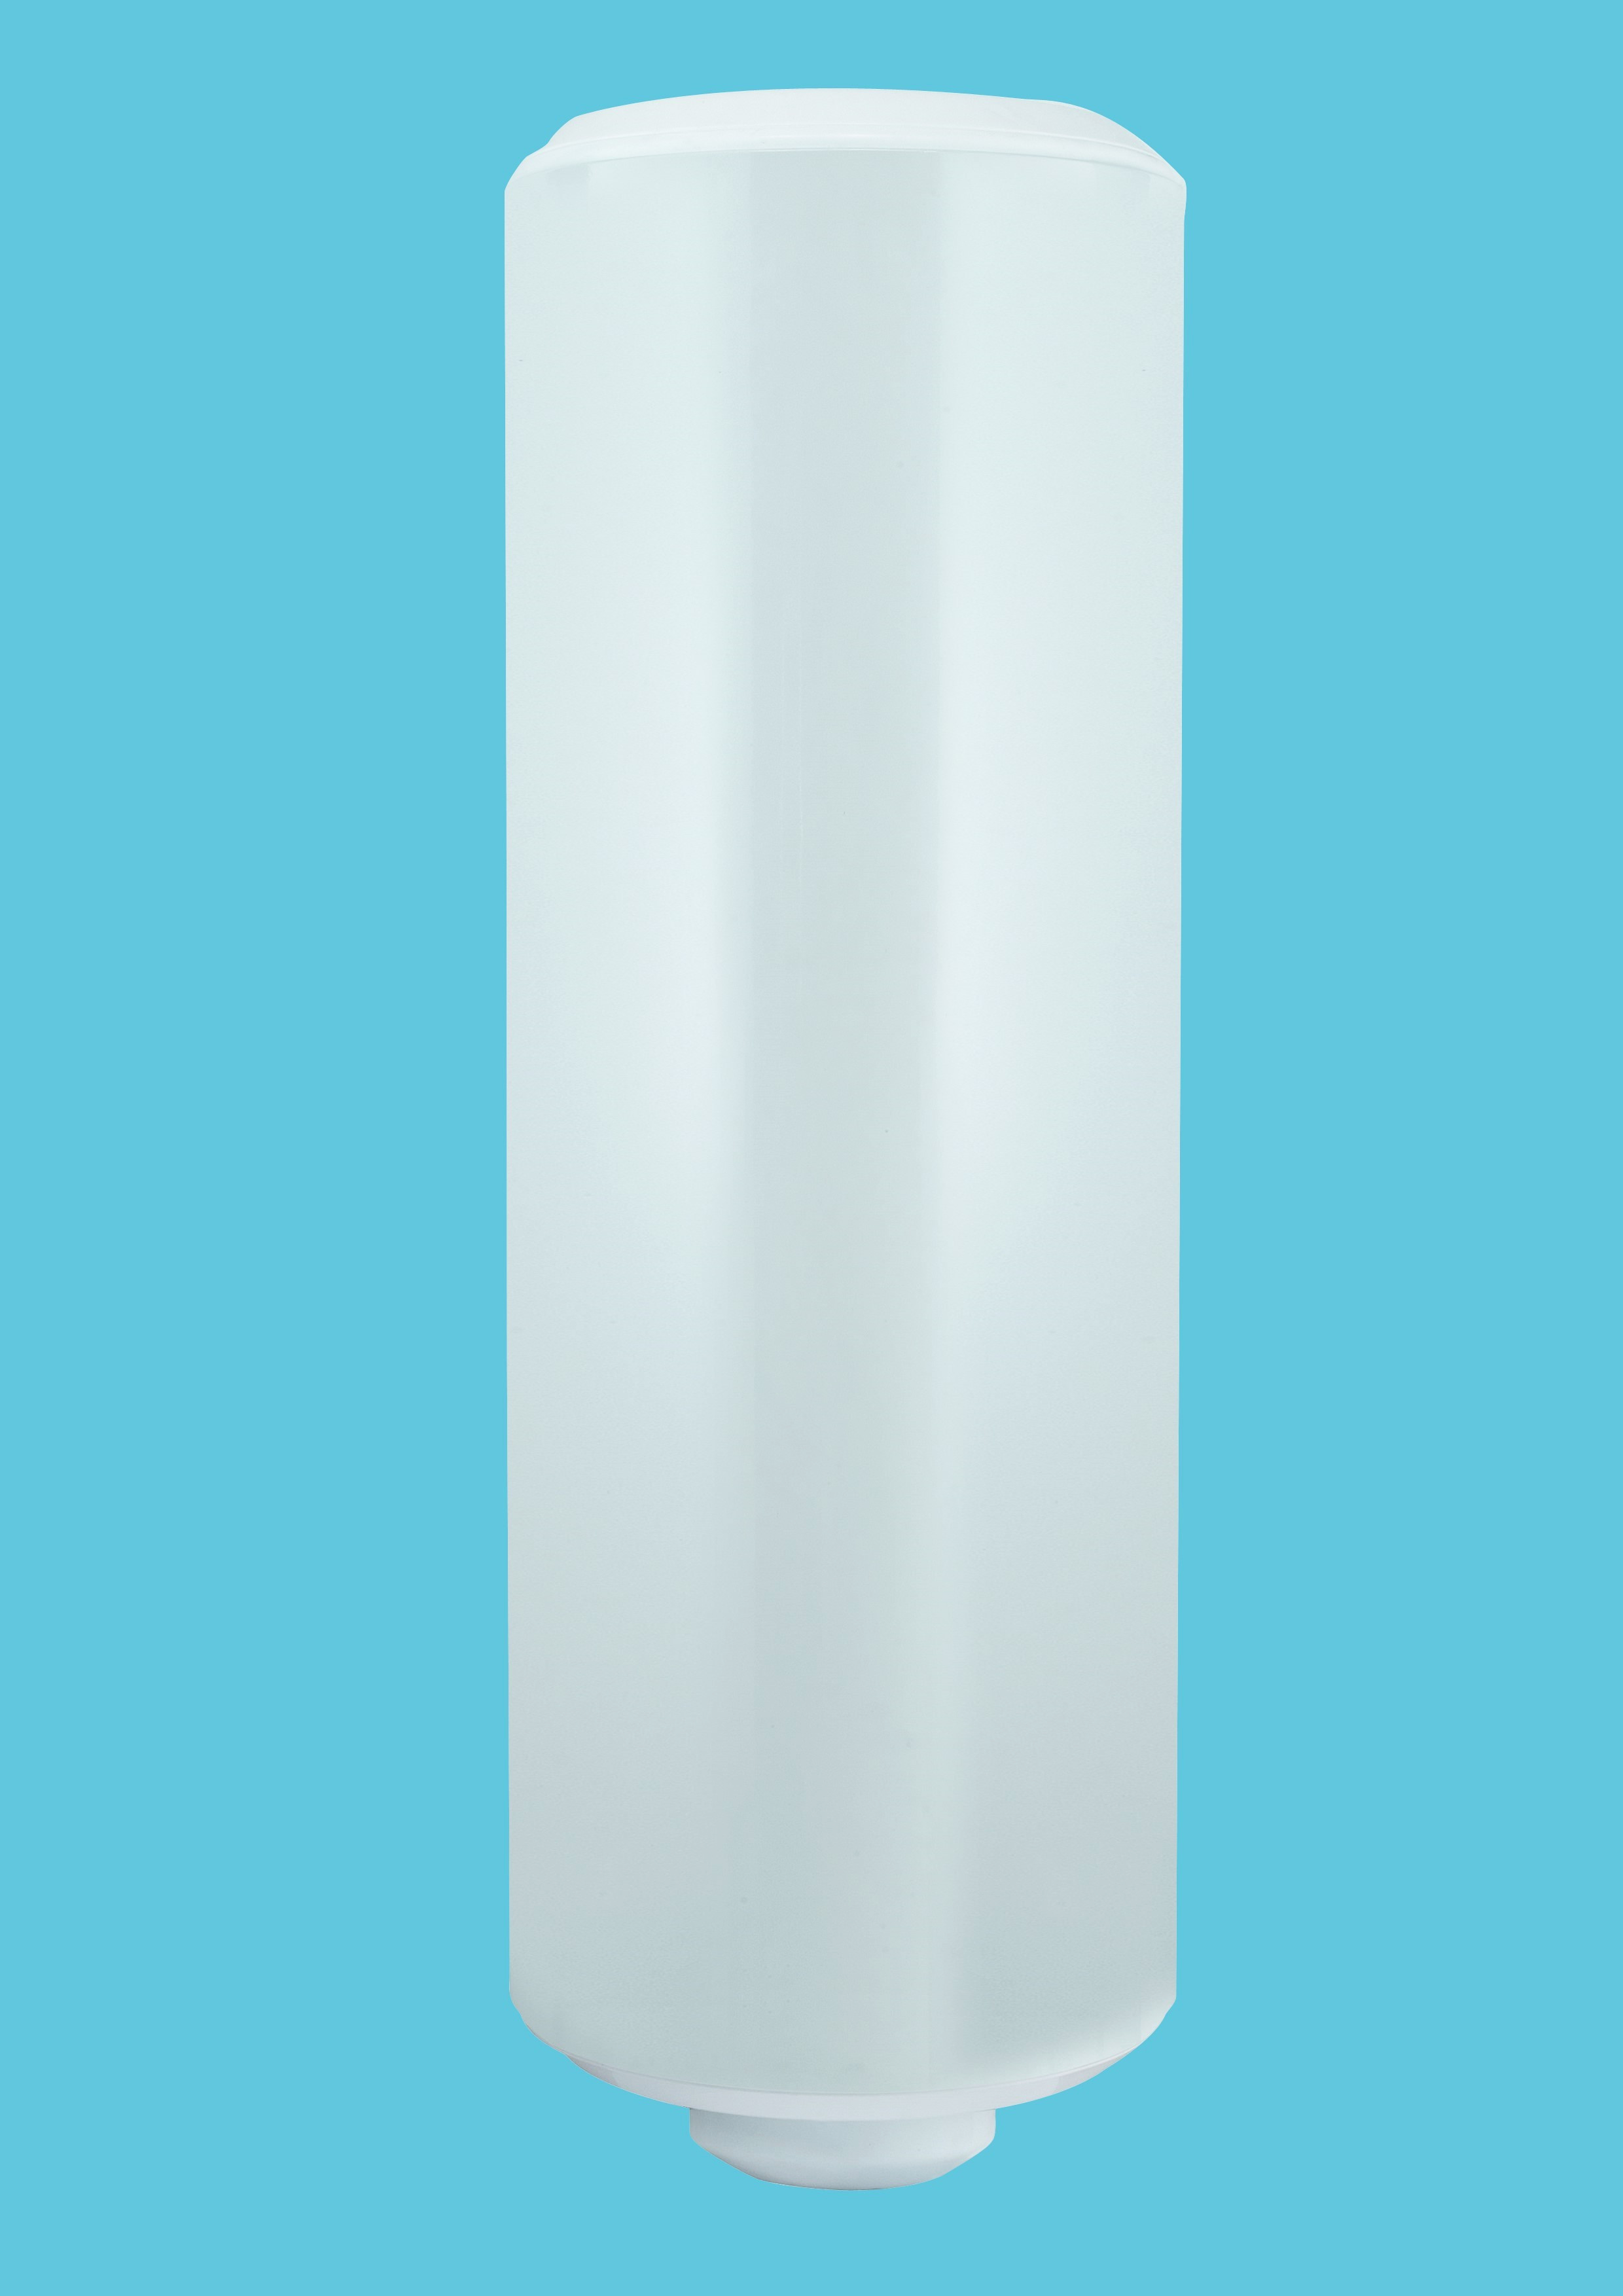 Midea Chauffe Eau Electrique Vertical 15 L , D15-20VG1 - Blanc